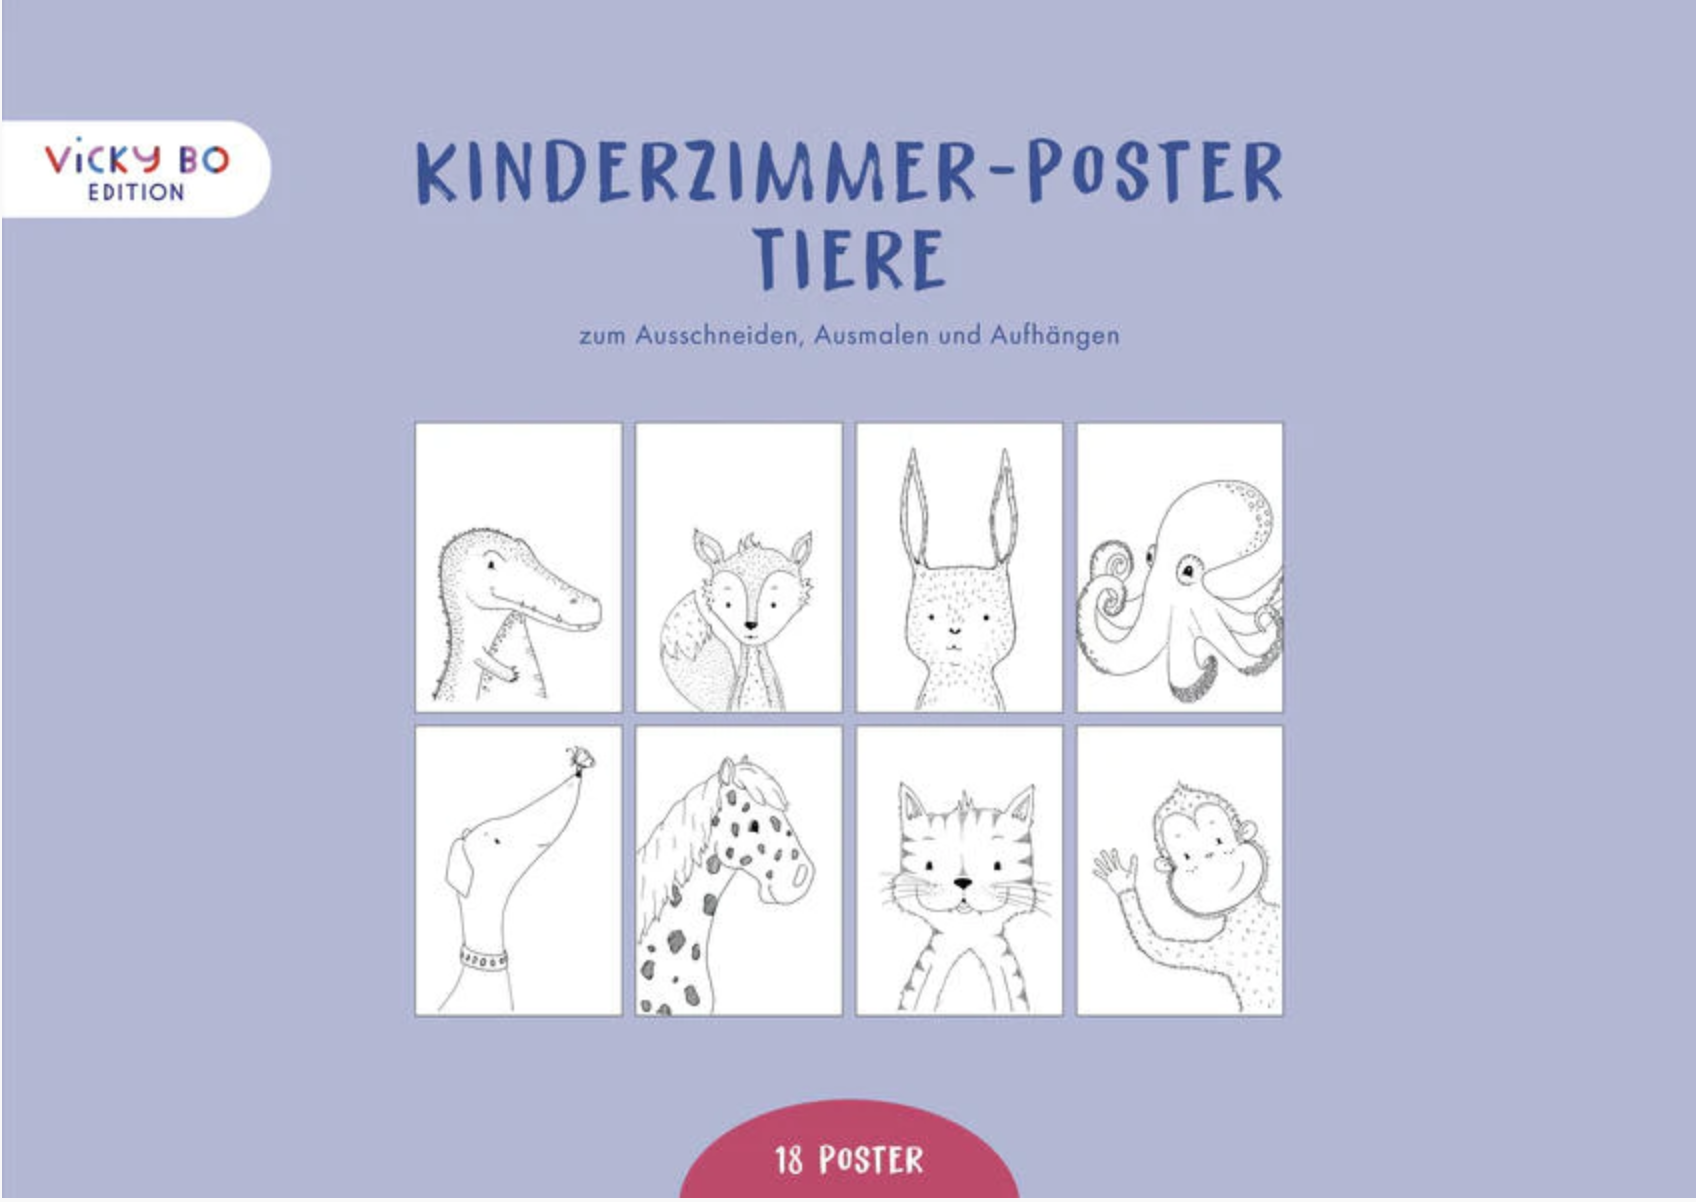 Kinderzimmer-Poster - Tiere. Zeichnungen zum Ausschneiden, Ausmalen und Aufhängen